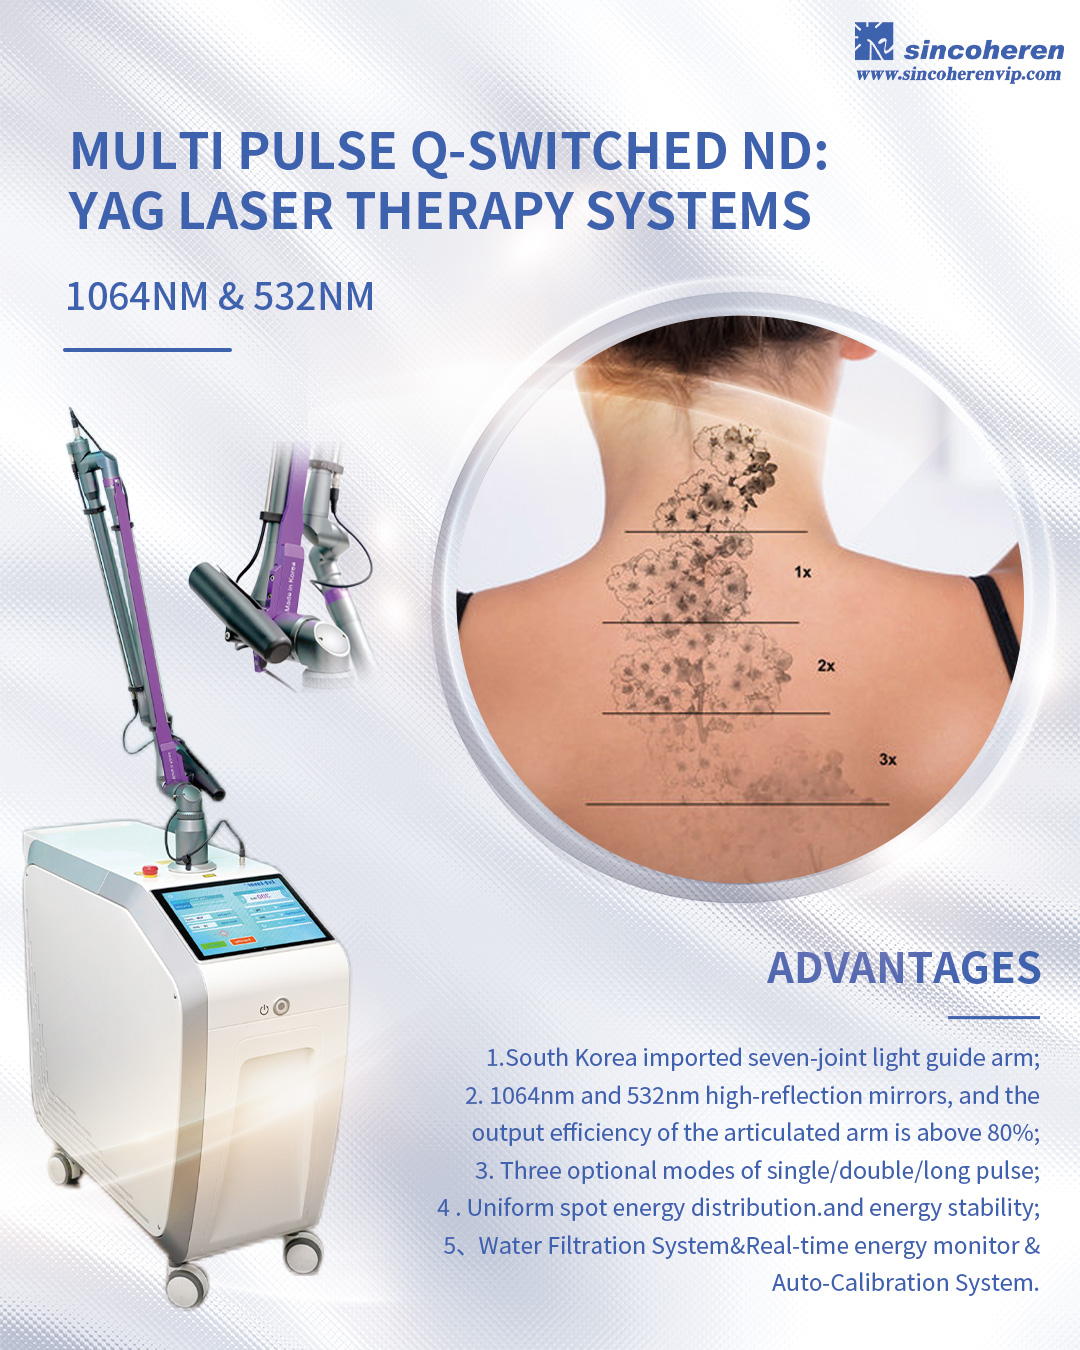 Q-Switched Nd:yag Laser: Effektiewe behandeling vir pigmentverwydering en tatoeëermerke